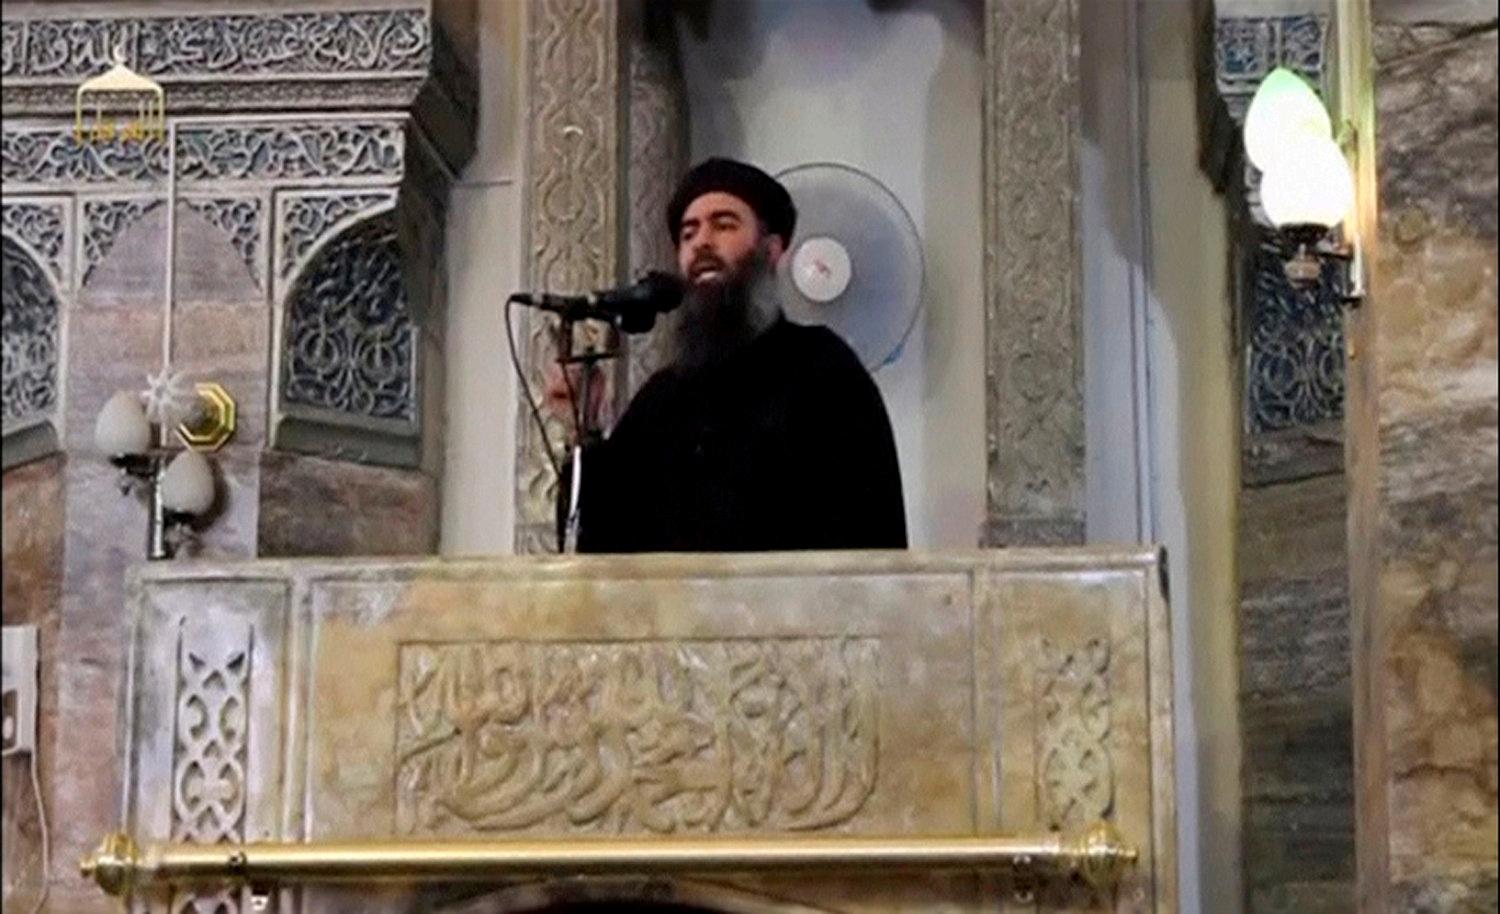 Abu Bakr al-Baghdadi utropade 2014 terrorrörelsen IS så kallade kalifat i al-Nurimoskén.